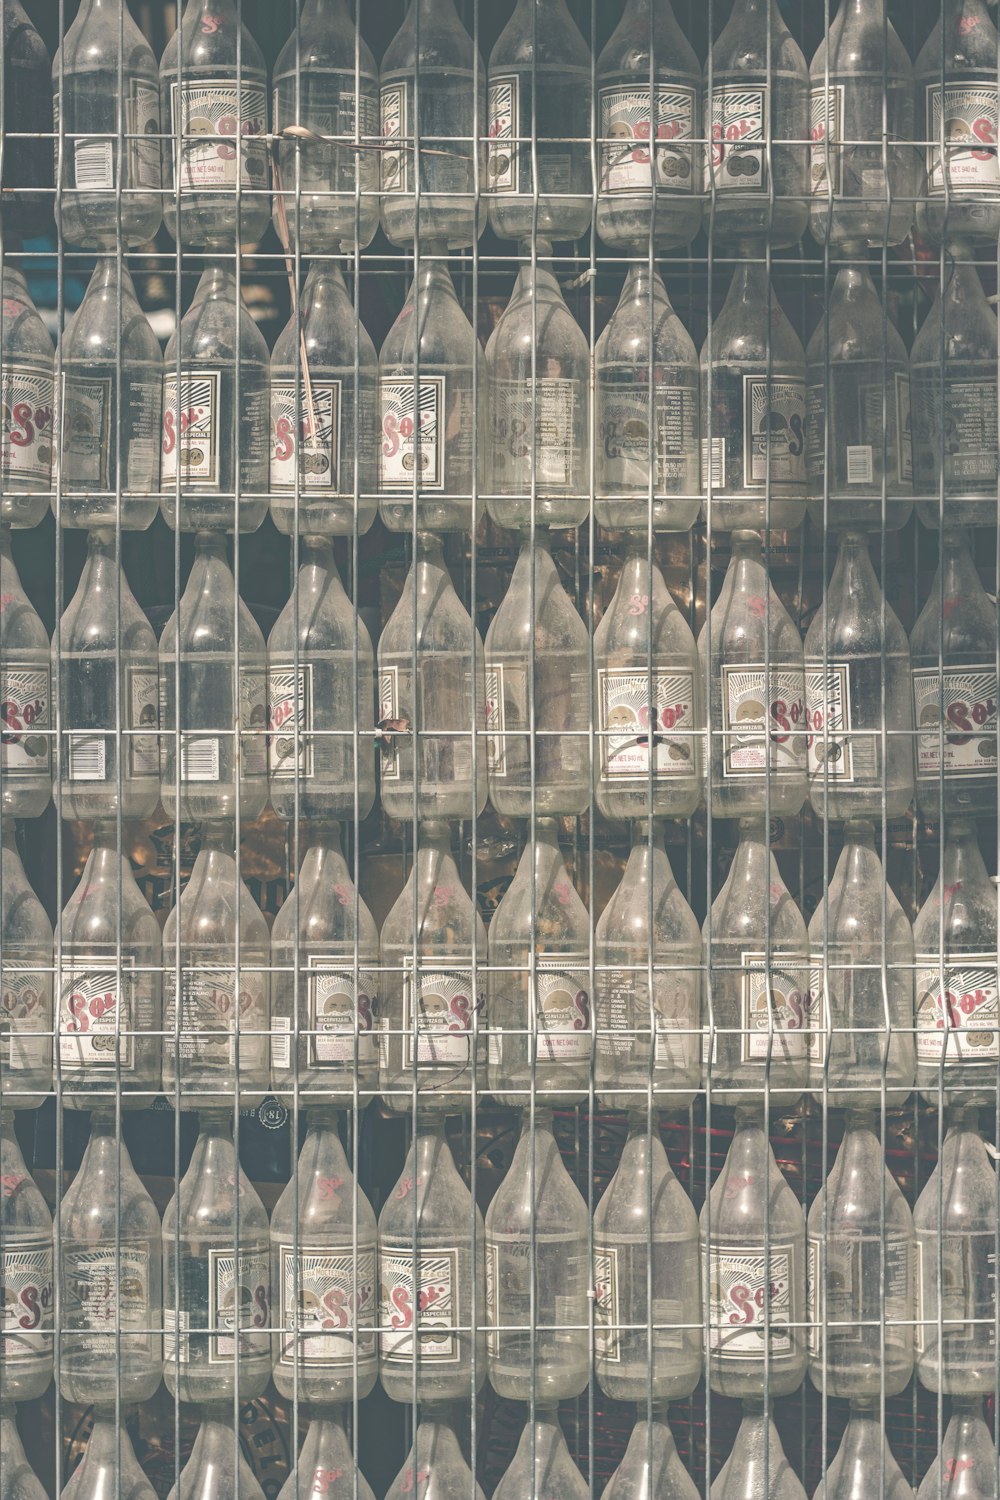 lote de botellas de vidrio transparente